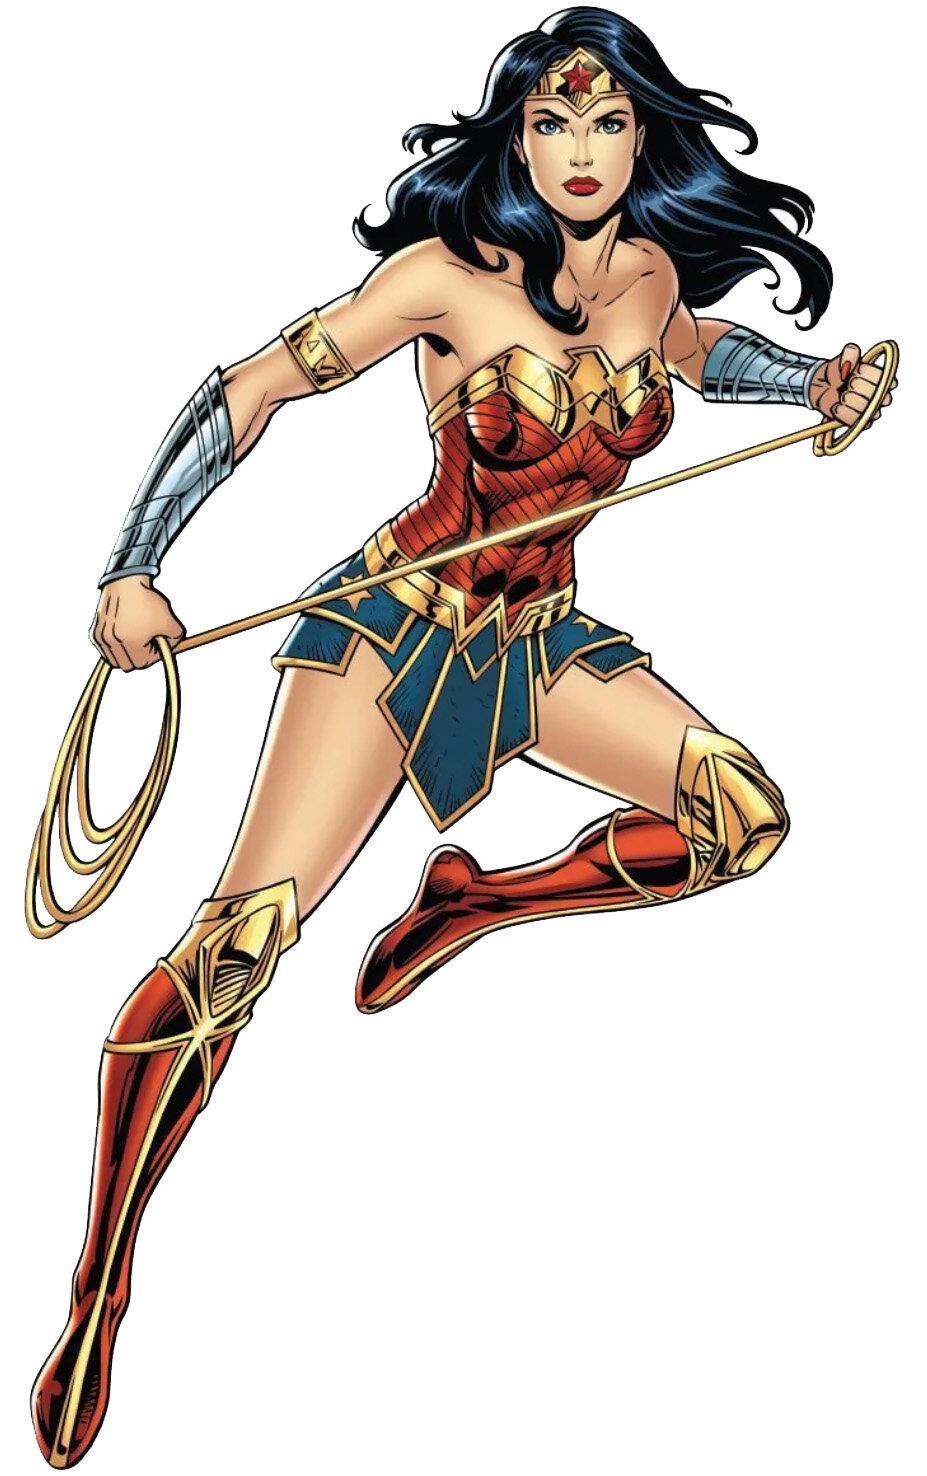 Wonder Woman (© DC comics)